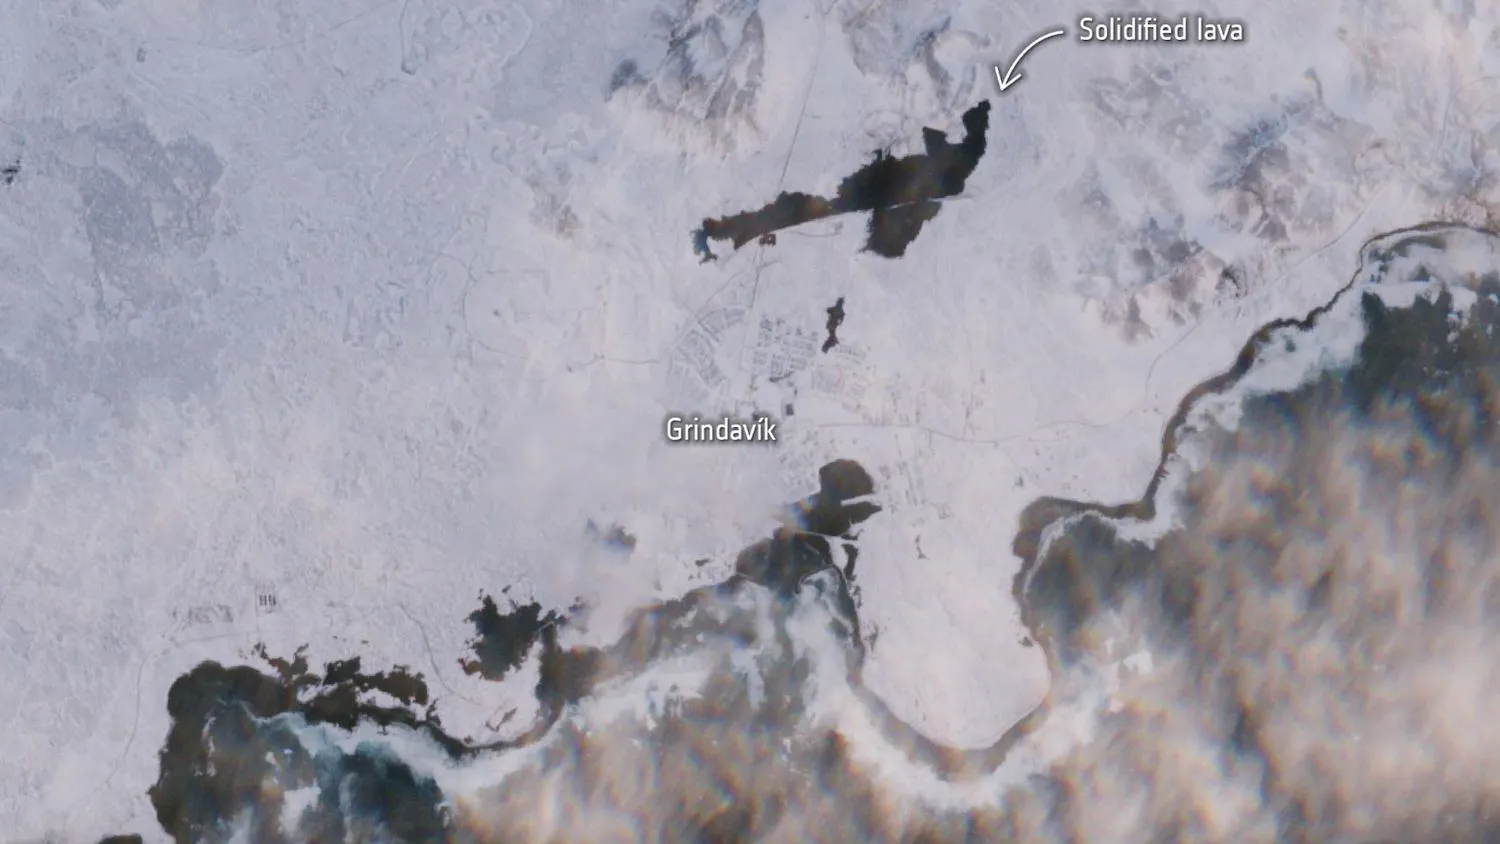 Satellitenfoto einer eisigen Landschaft mit einem dunklen Fleck, der auf einen frisch erstarrten Lavastrom hindeutet.